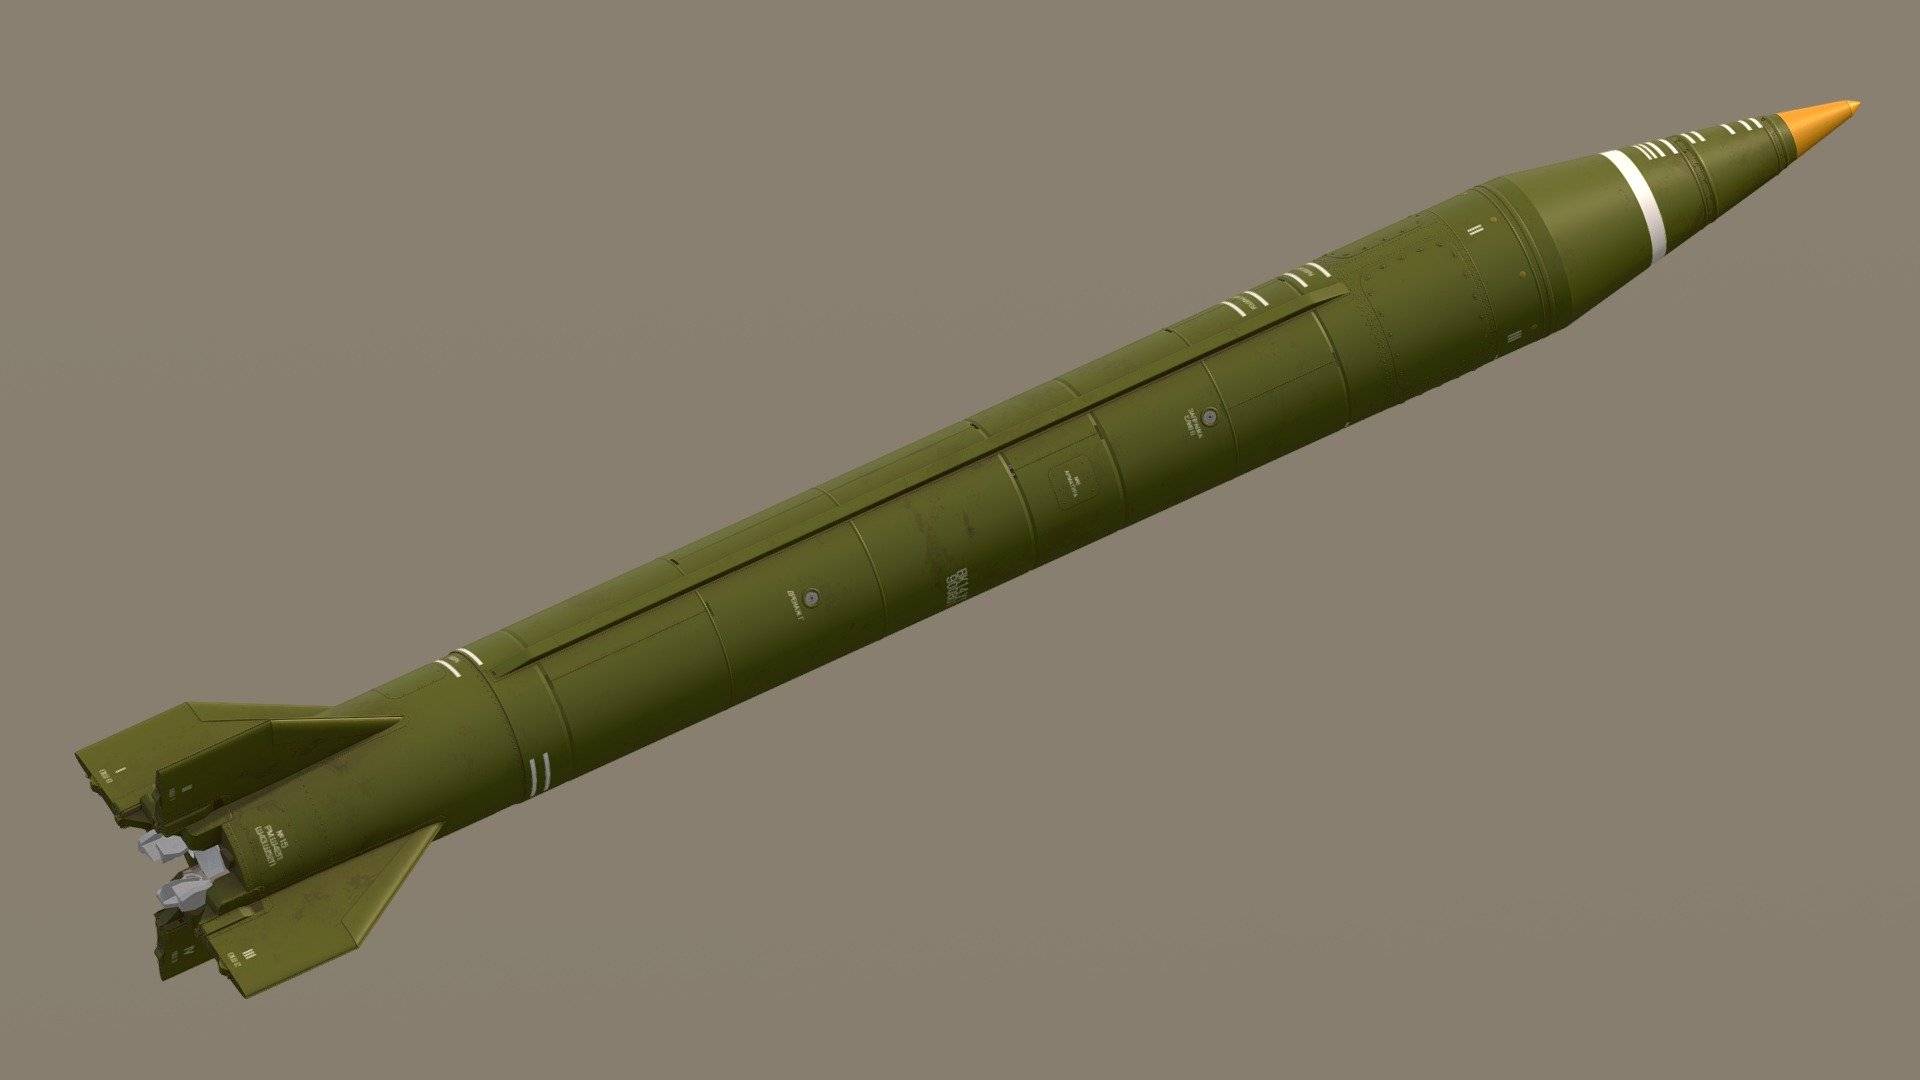 Тактический ракетный комплекс “точка-у” — старый, высокоточный и смертоносный